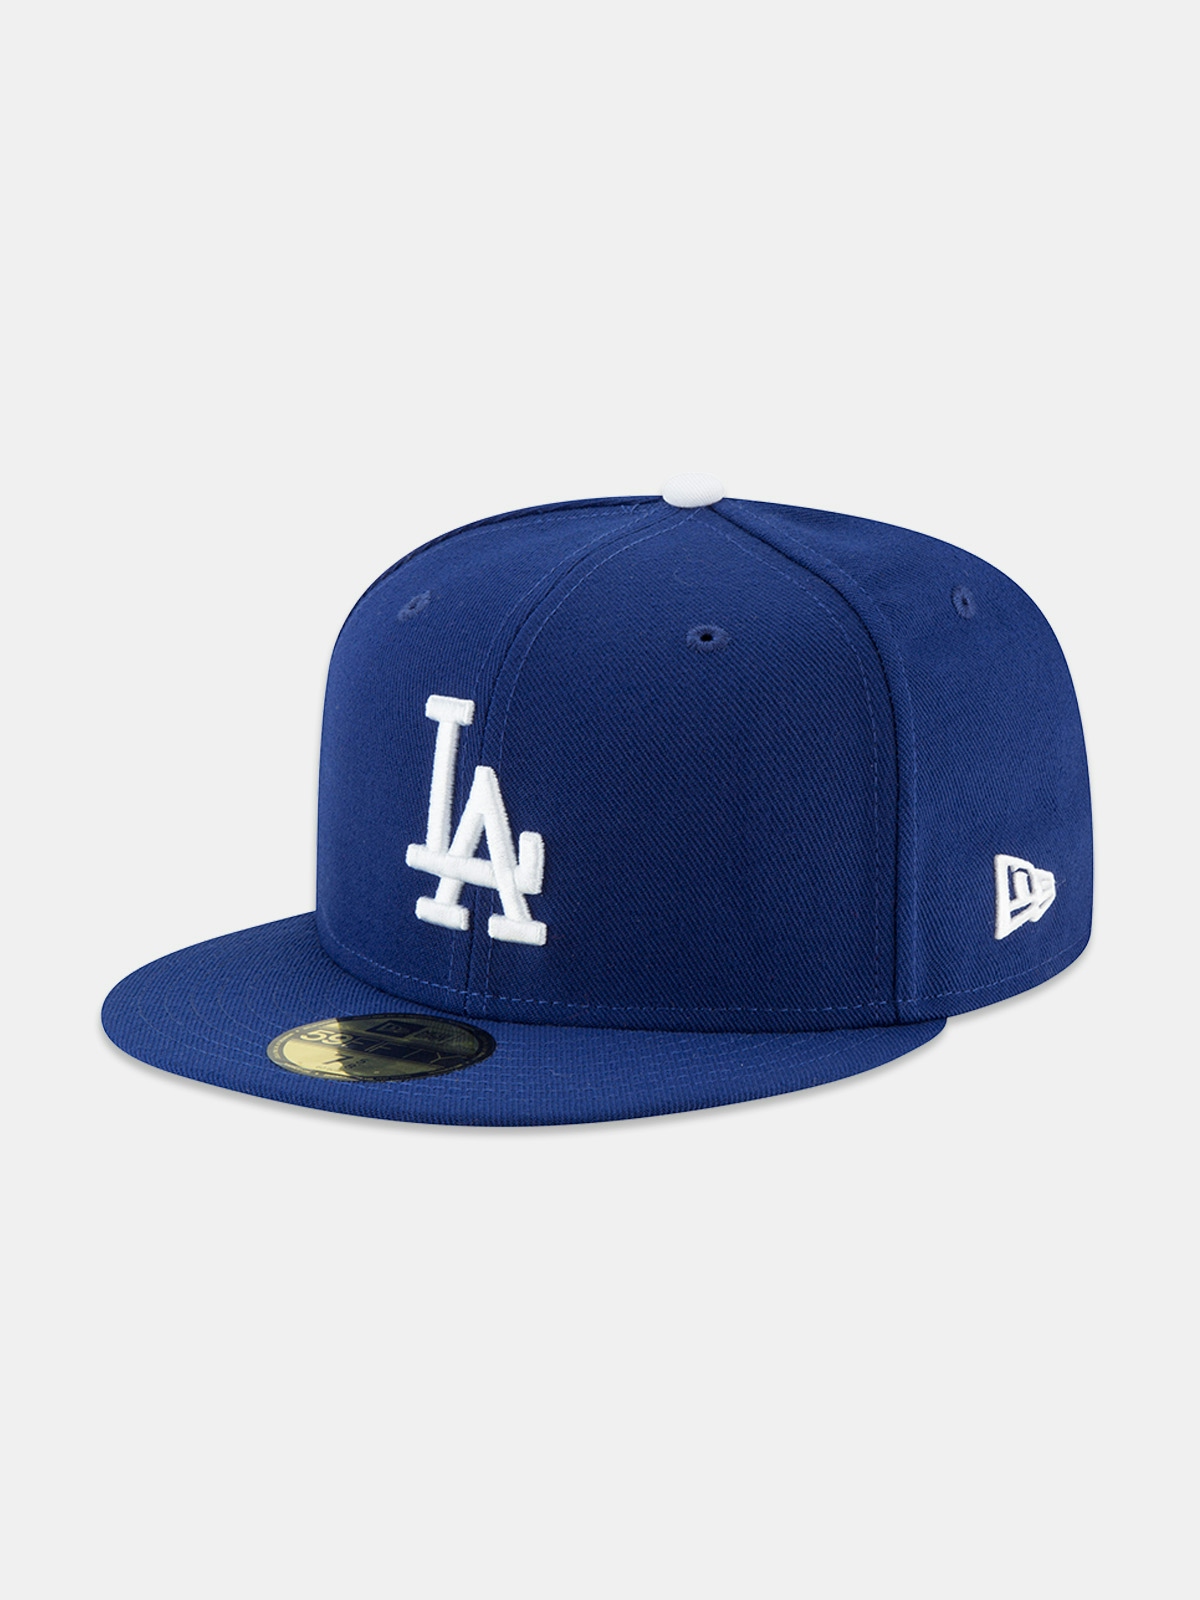 New Era Mlb Ac Perf 5950 Los Angeles Dodgers Caps Blue 3